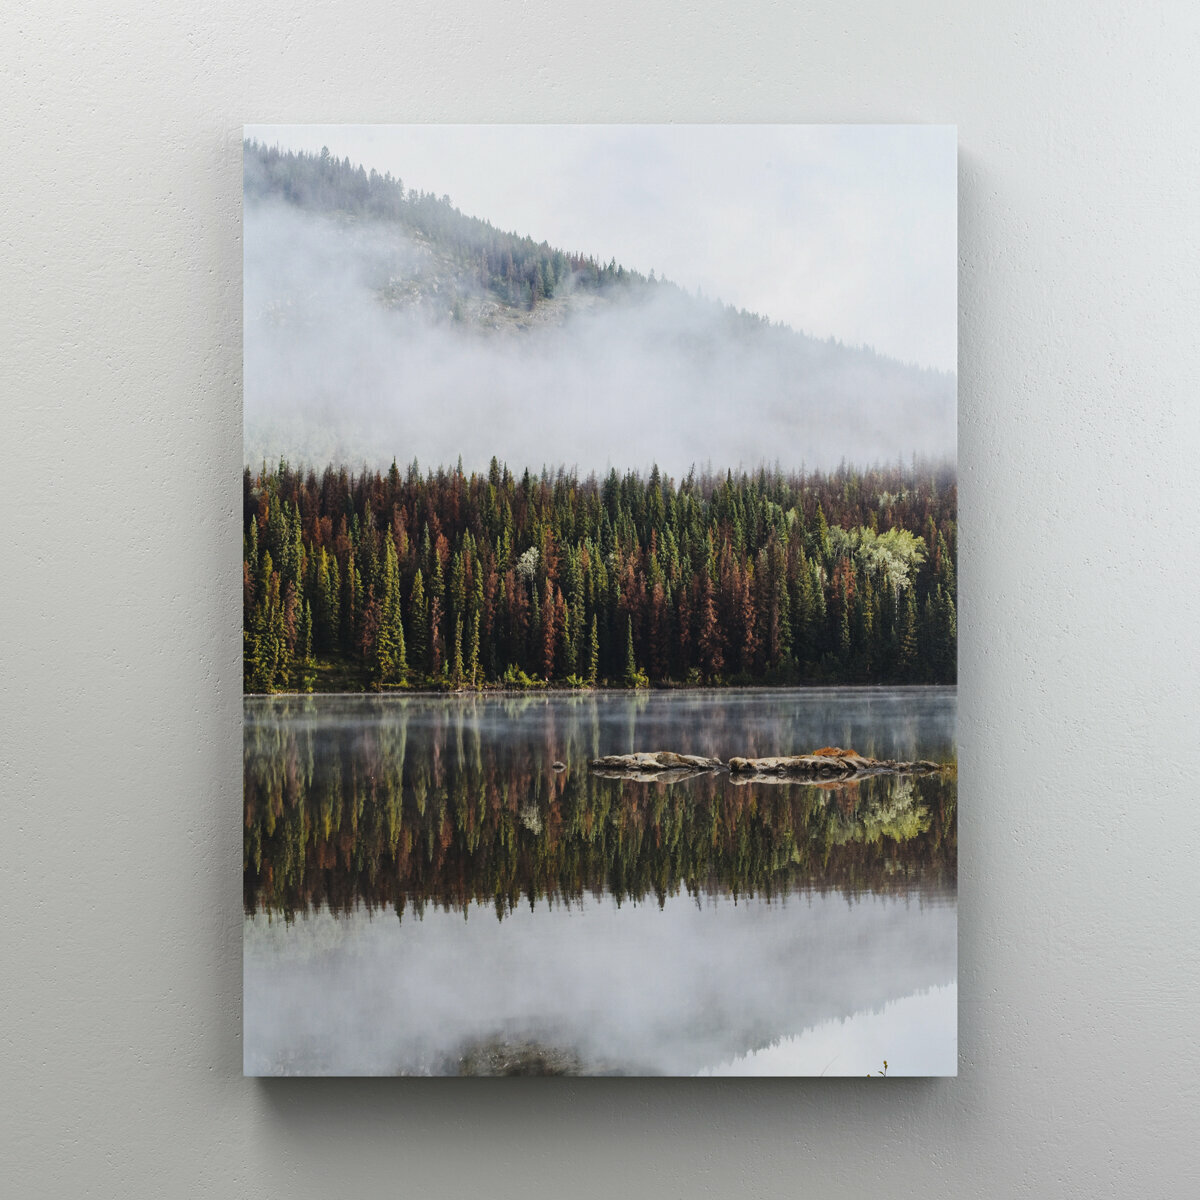 Интерьерная картина на холсте "Лес возле озера" в скандинавском стиле, размер 22x30 см